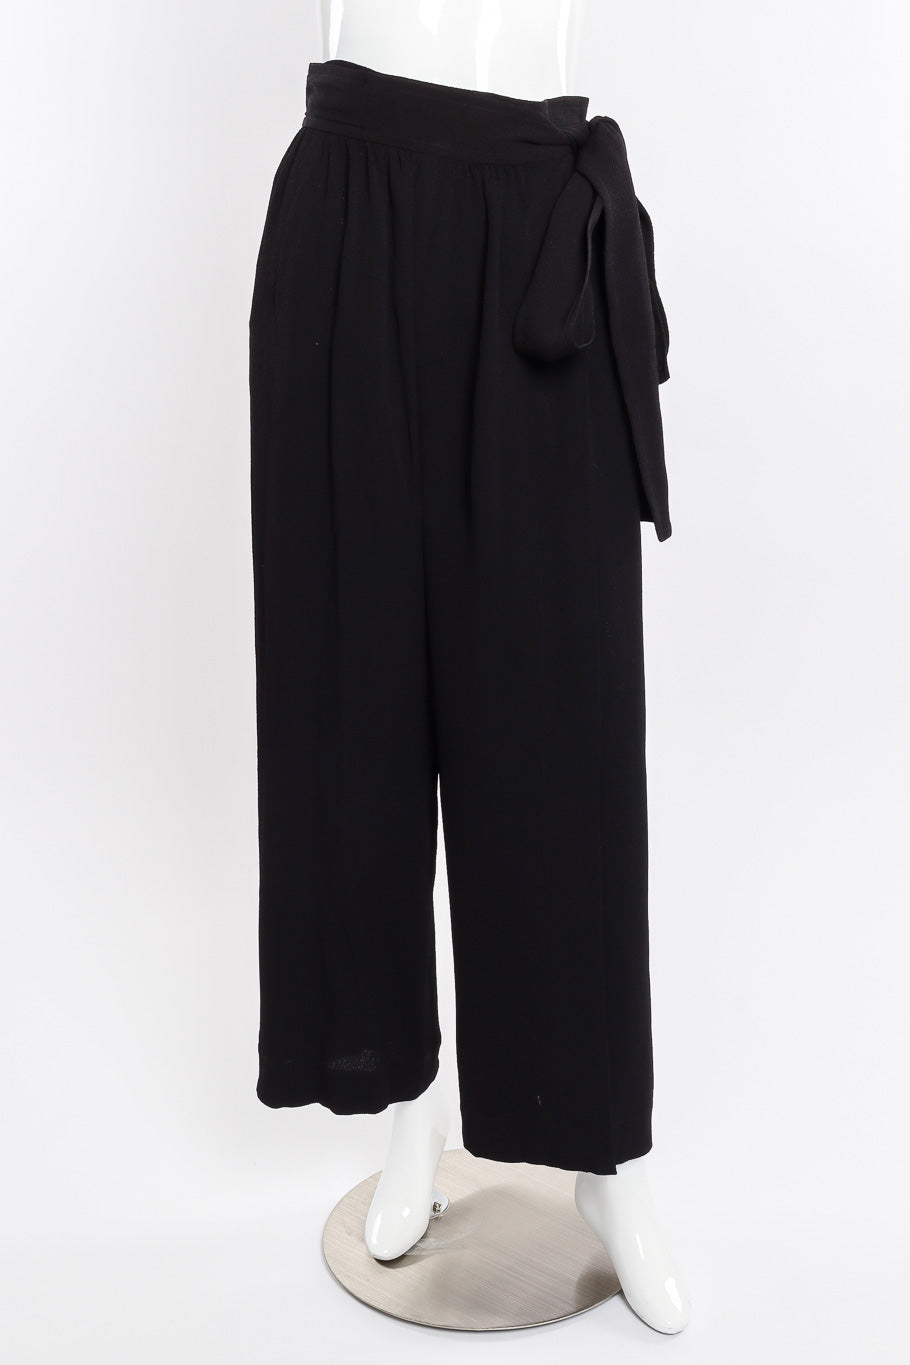 Wrap trouser by Yves Saint Laurent on mannequin front @recessla